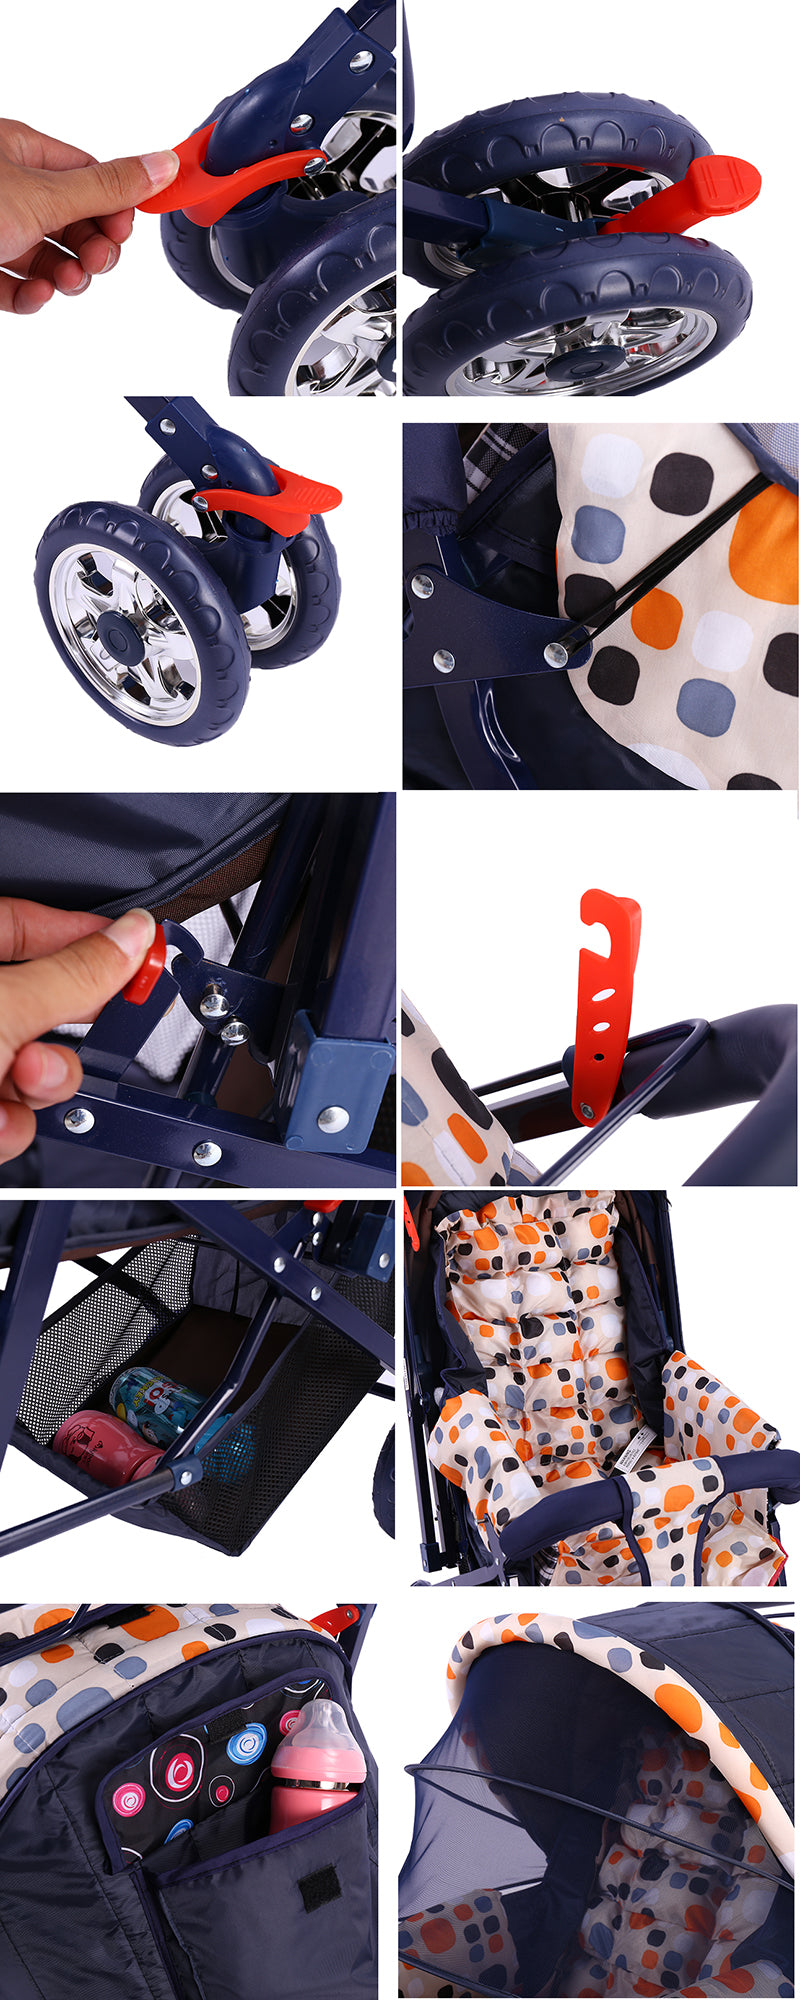 Multi-Functional Baby Strollers